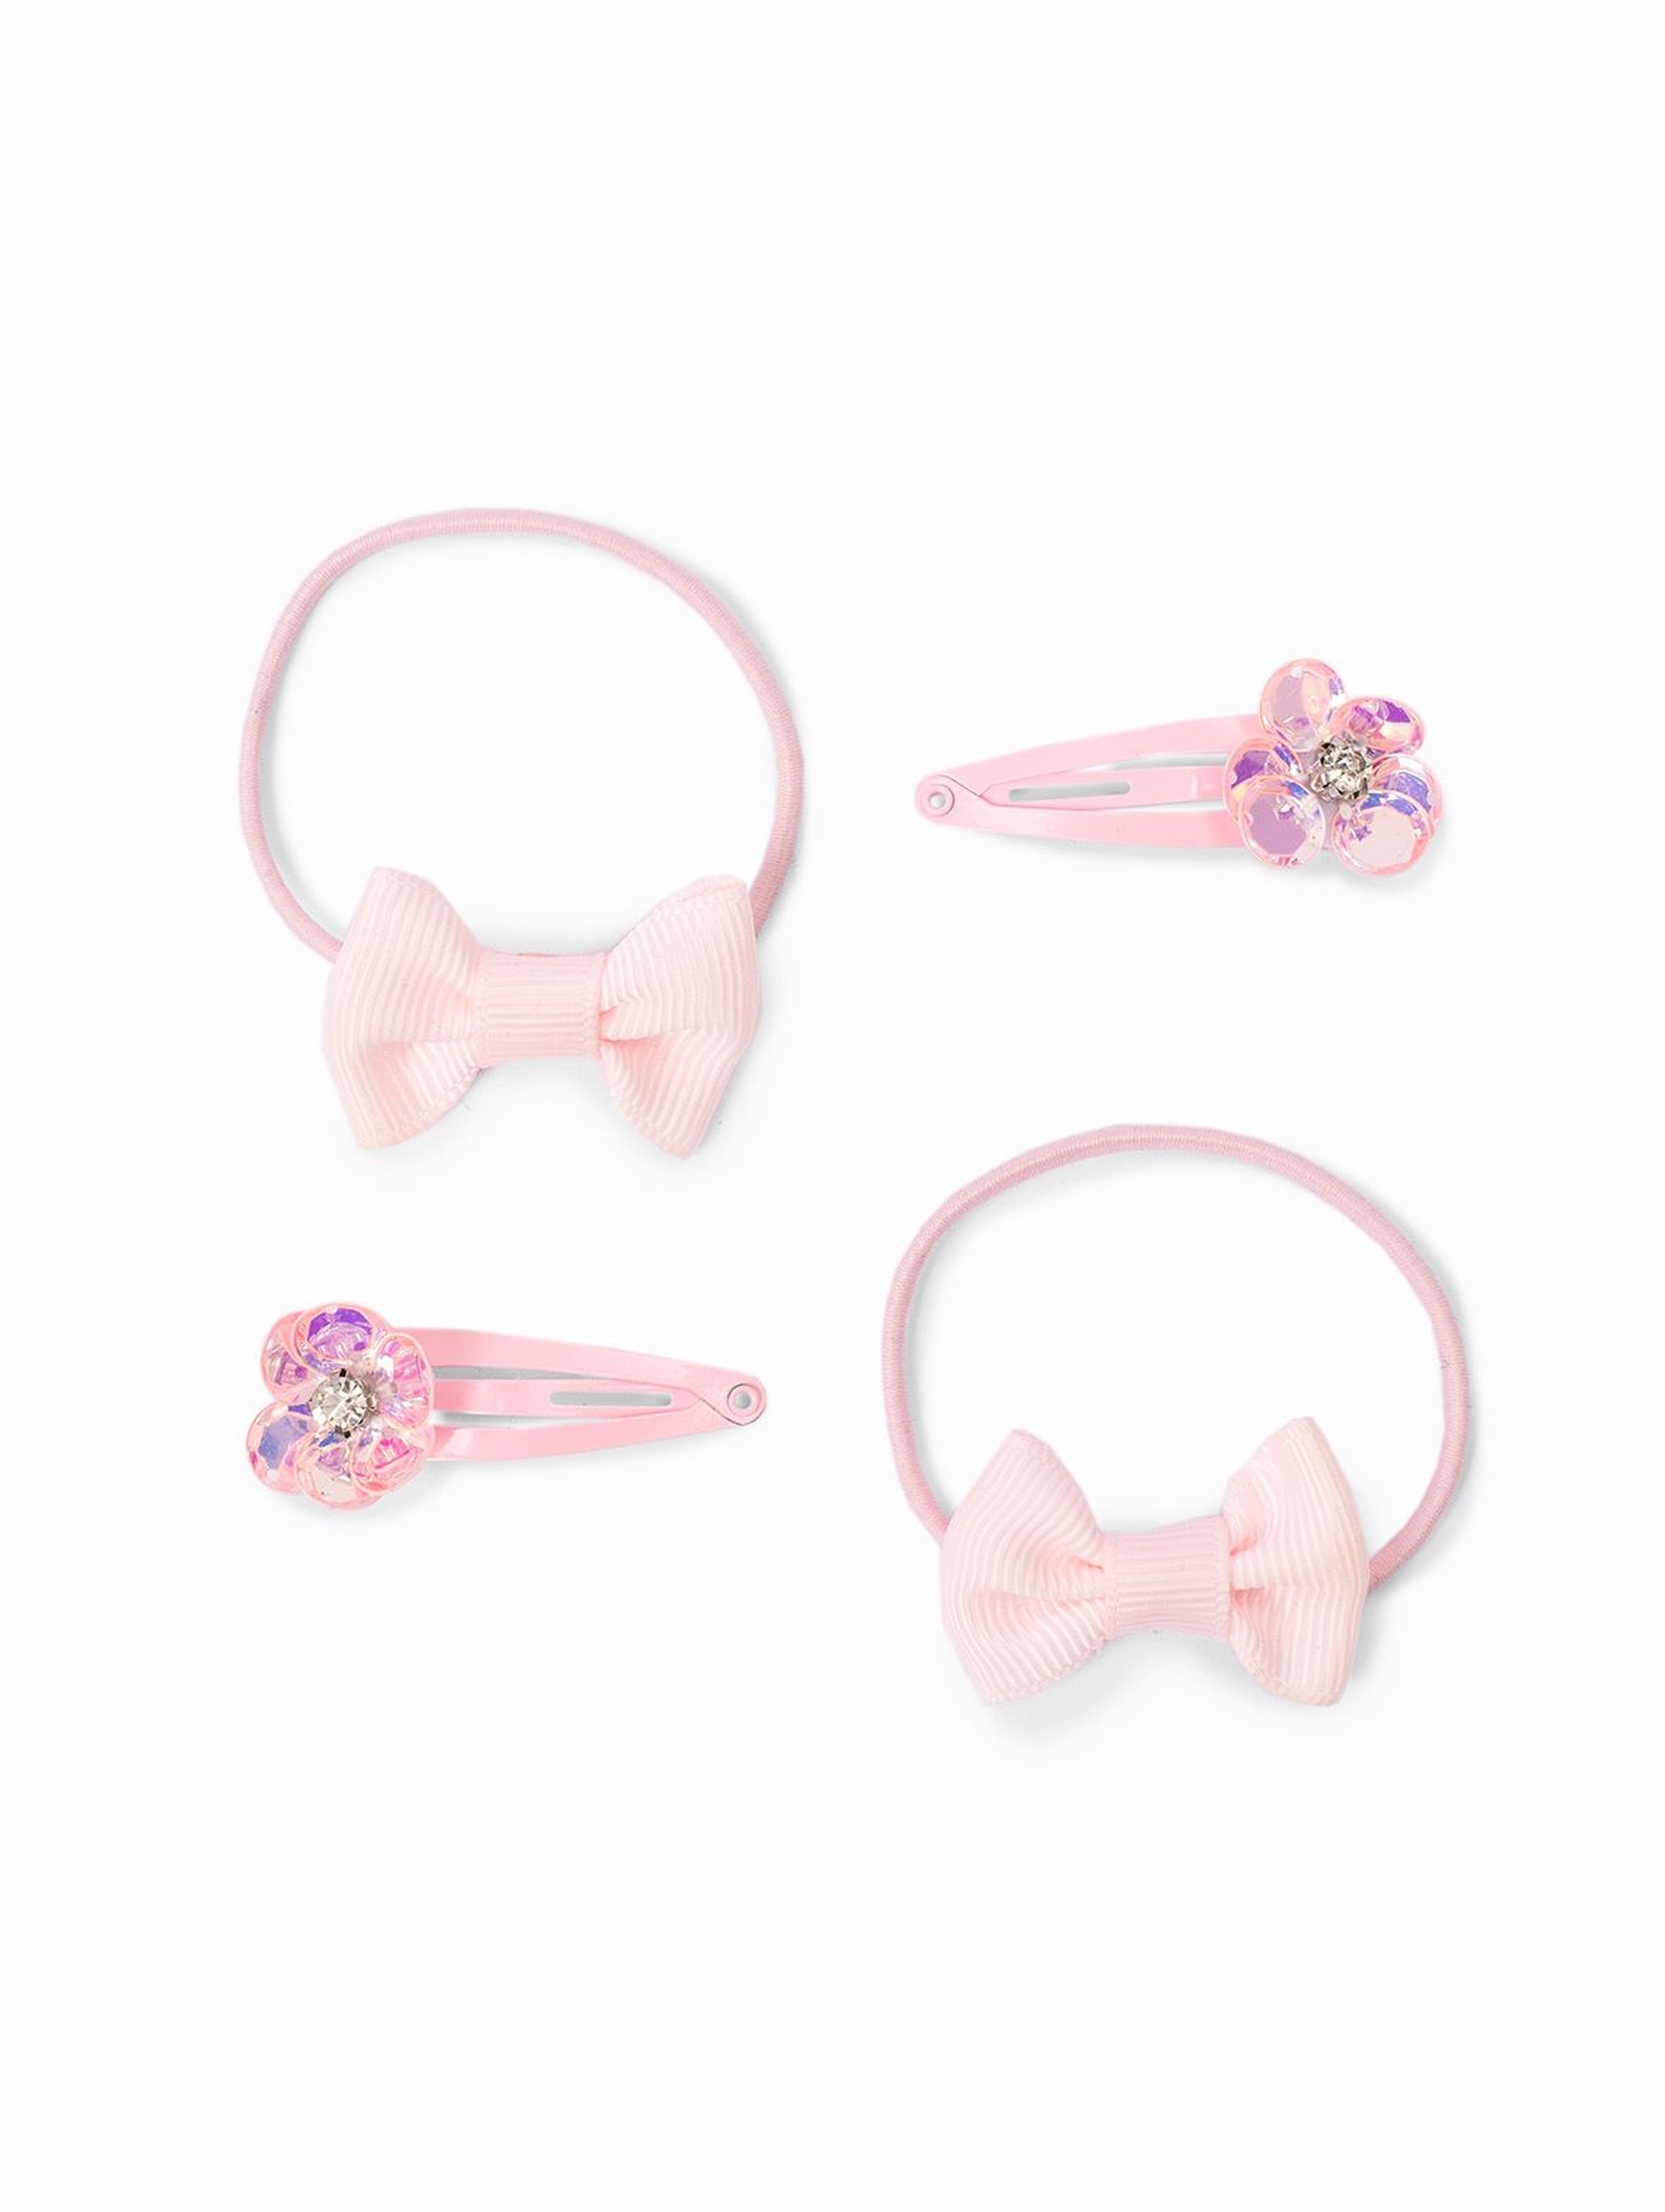 Ozdoby do włosów dla dziewczynki - gumki do włosów i spinki w kształcie kwiatków - różowe